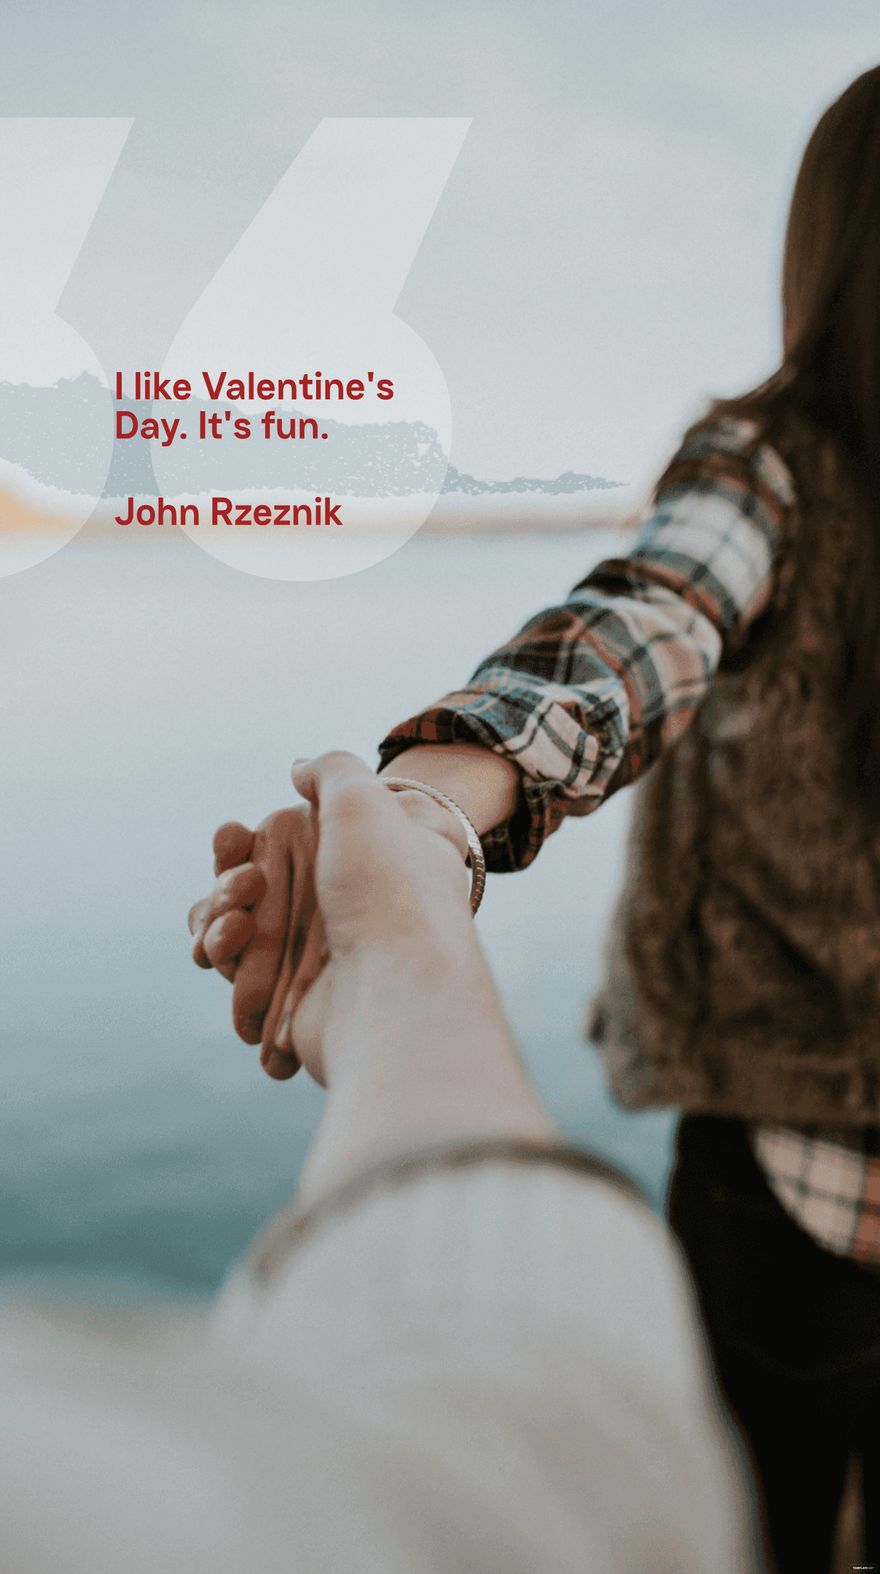 John Rzeznik - I like Valentine's Day. It's fun.